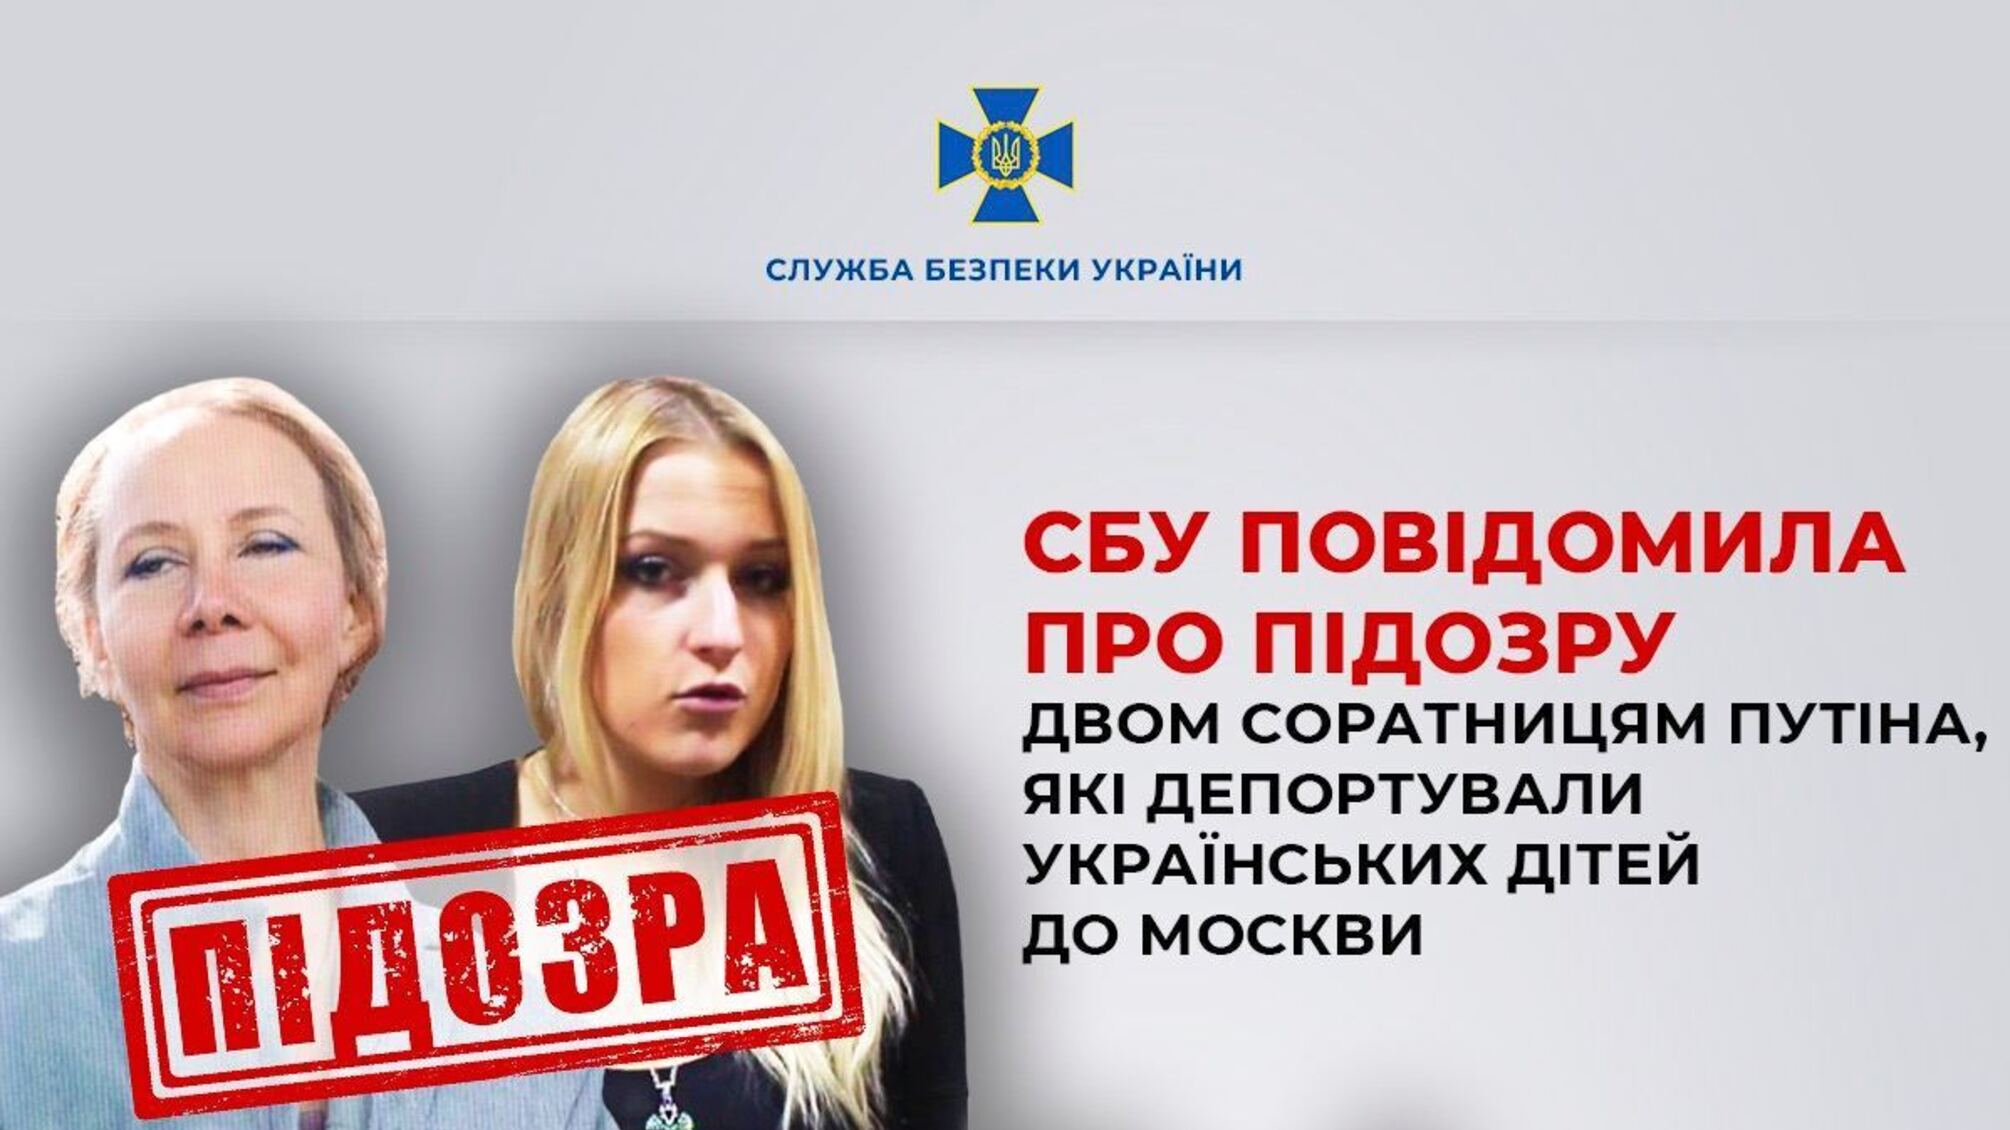 Депортували українських дітей до москви: СБУ повідомила про підозру двом соратницям путіна